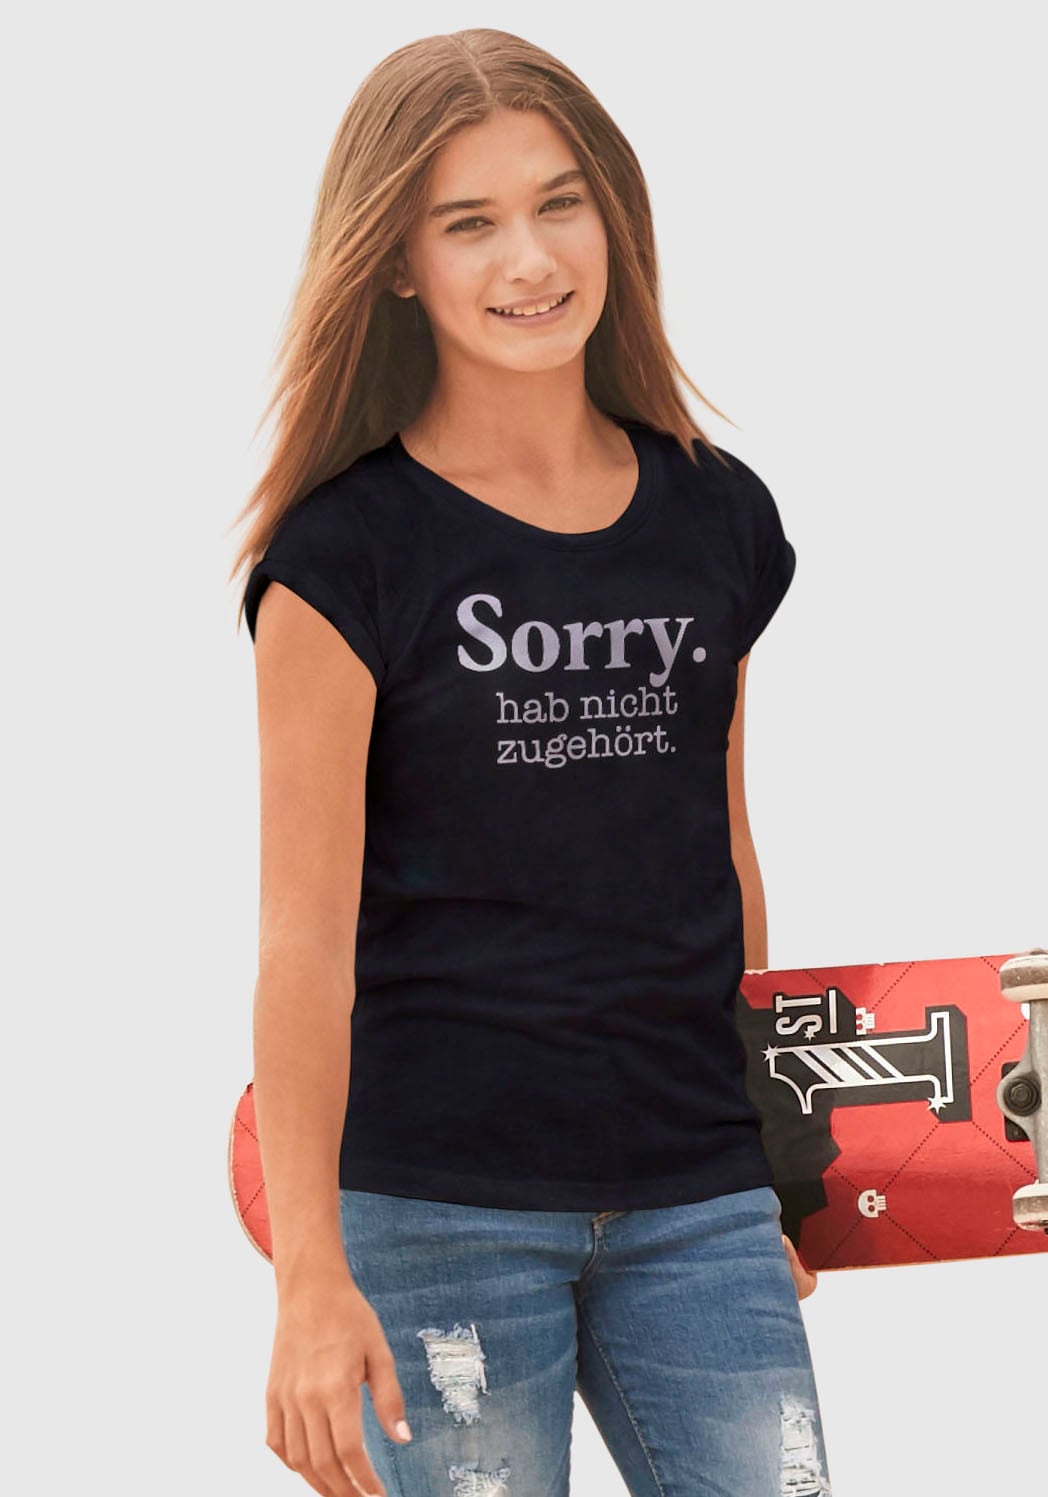 ♕ Form bei weiter in hab zugehört.«, legerer KIDSWORLD T-Shirt »Sorry. nicht